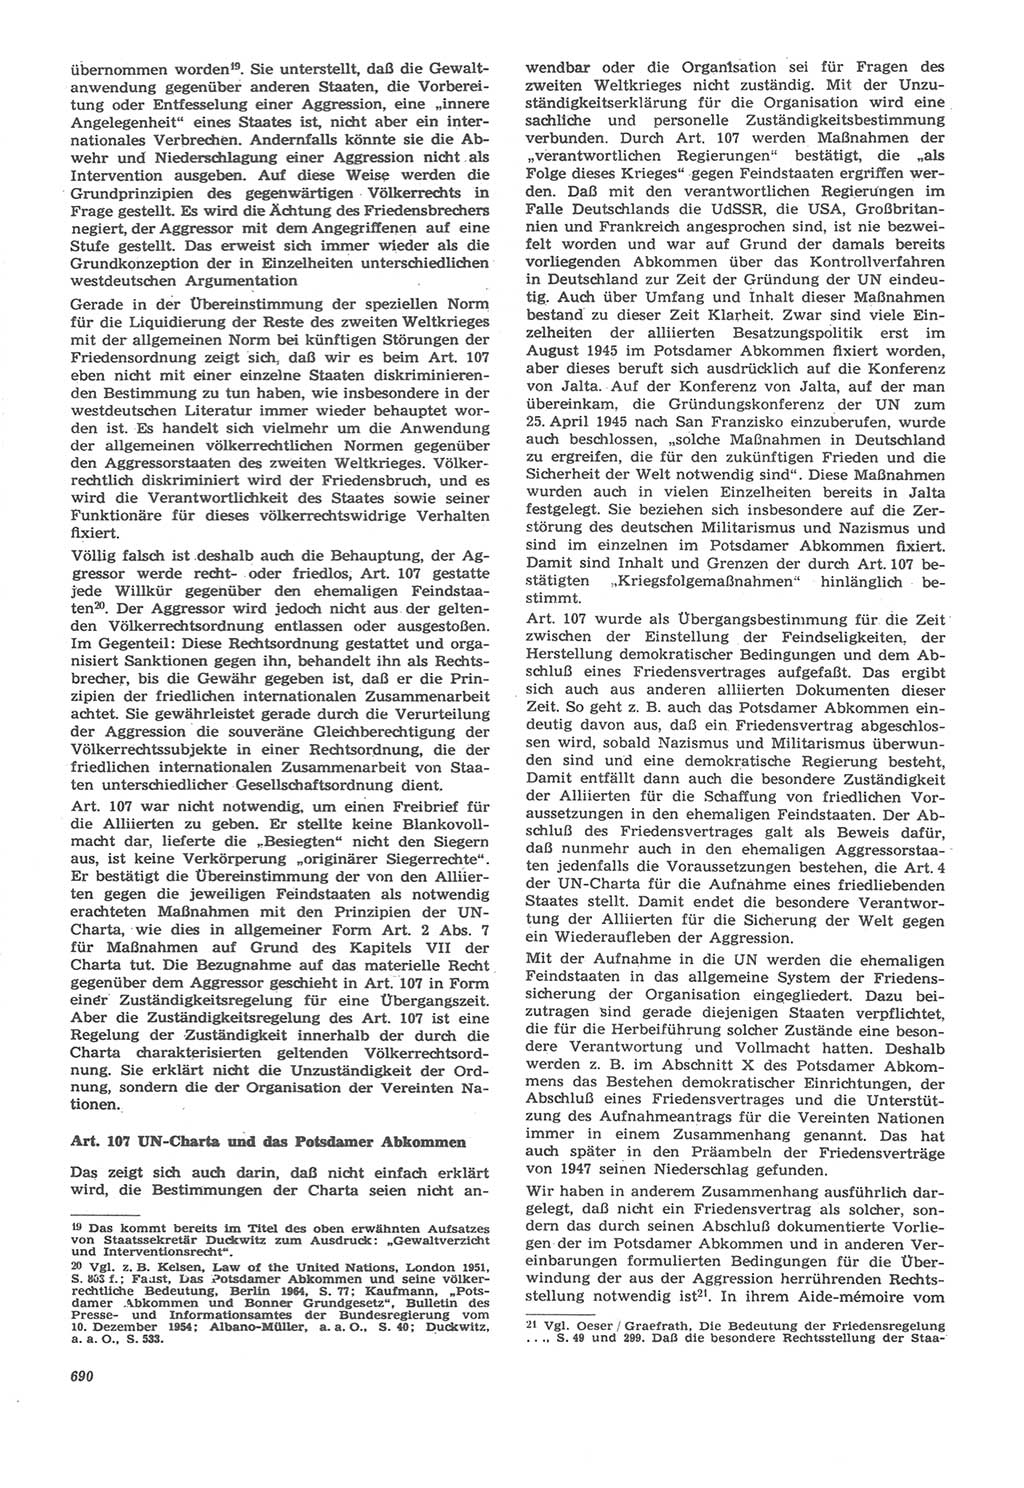 Neue Justiz (NJ), Zeitschrift für Recht und Rechtswissenschaft [Deutsche Demokratische Republik (DDR)], 22. Jahrgang 1968, Seite 690 (NJ DDR 1968, S. 690)